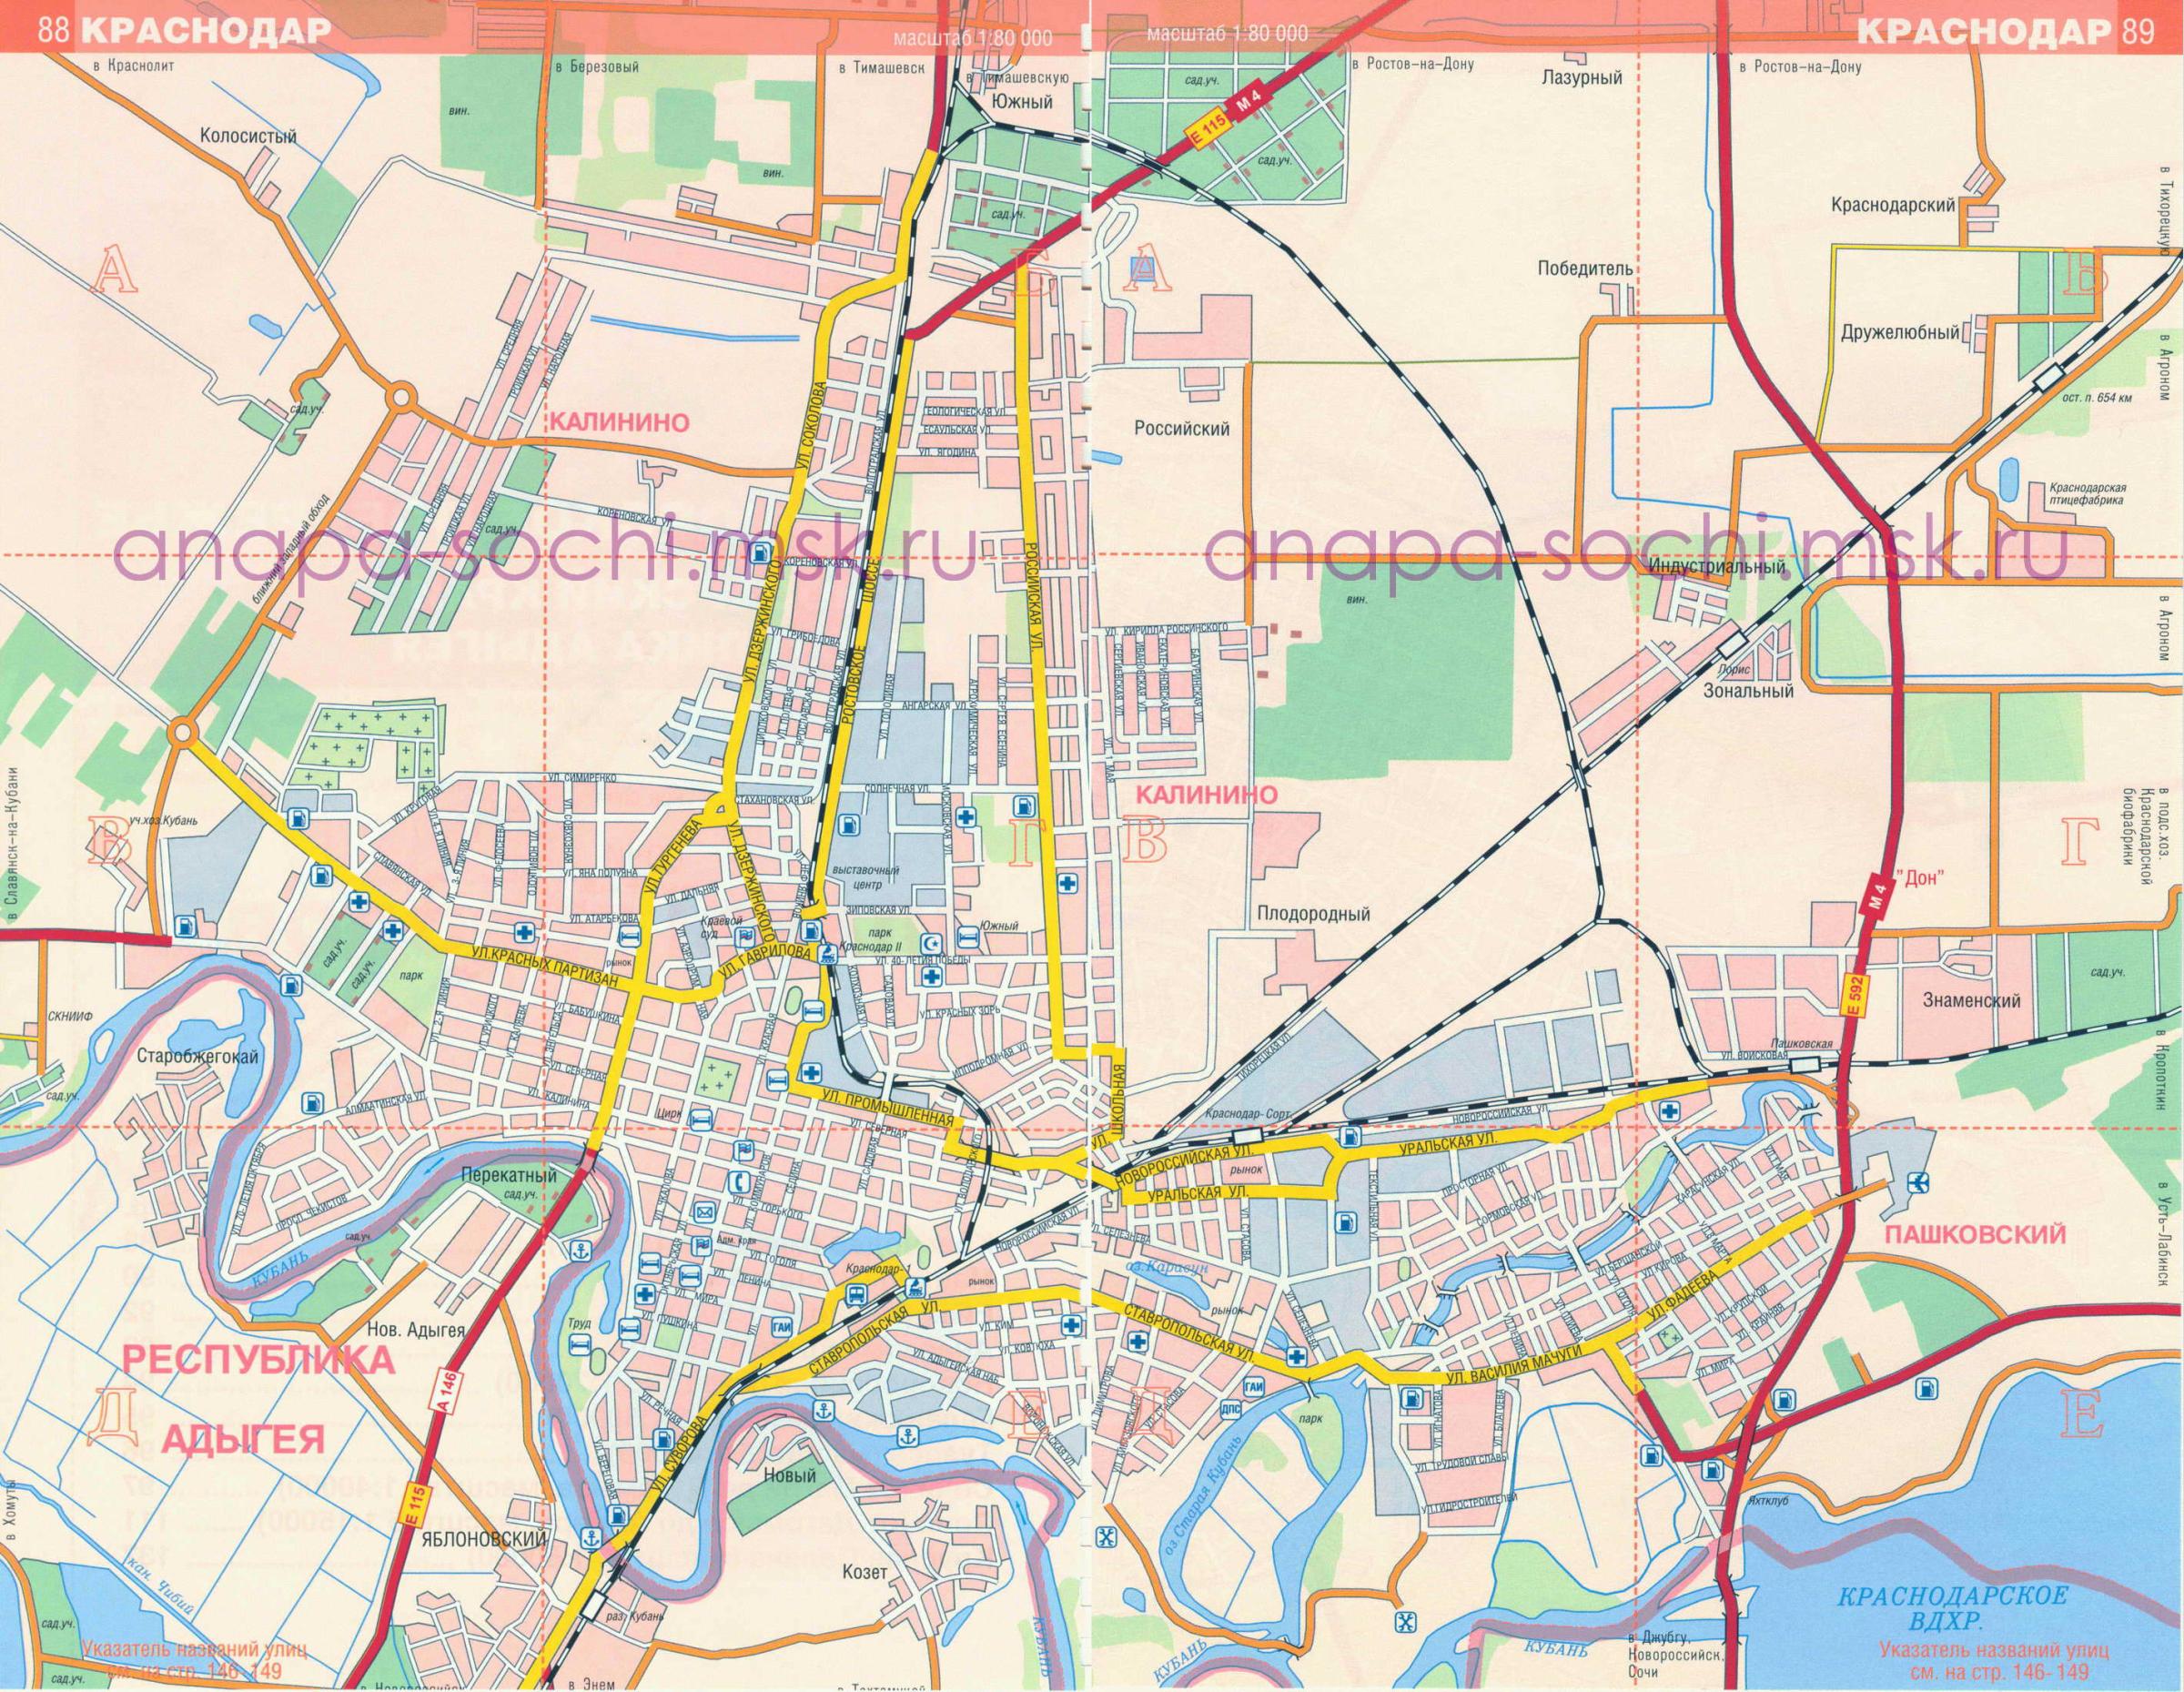 Туристическая карта Краснодара